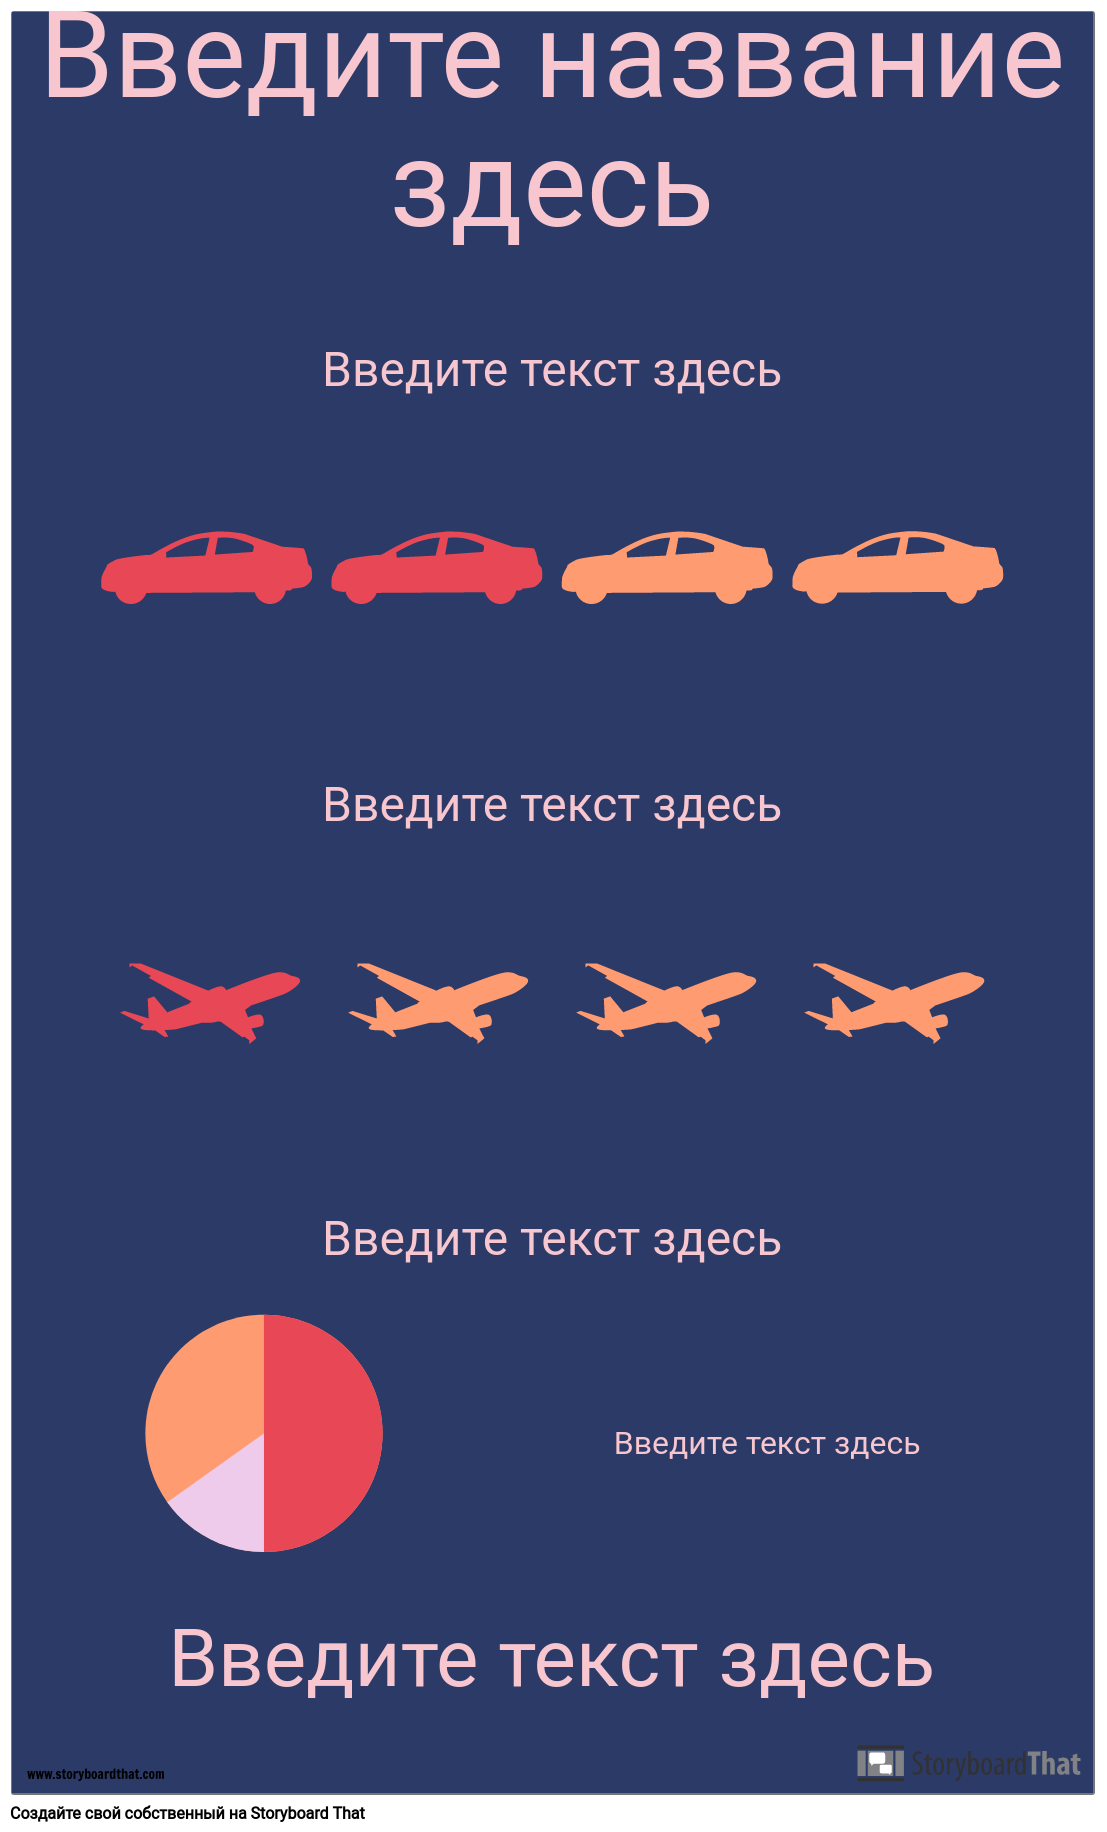 Транспортная PSA Инфографика